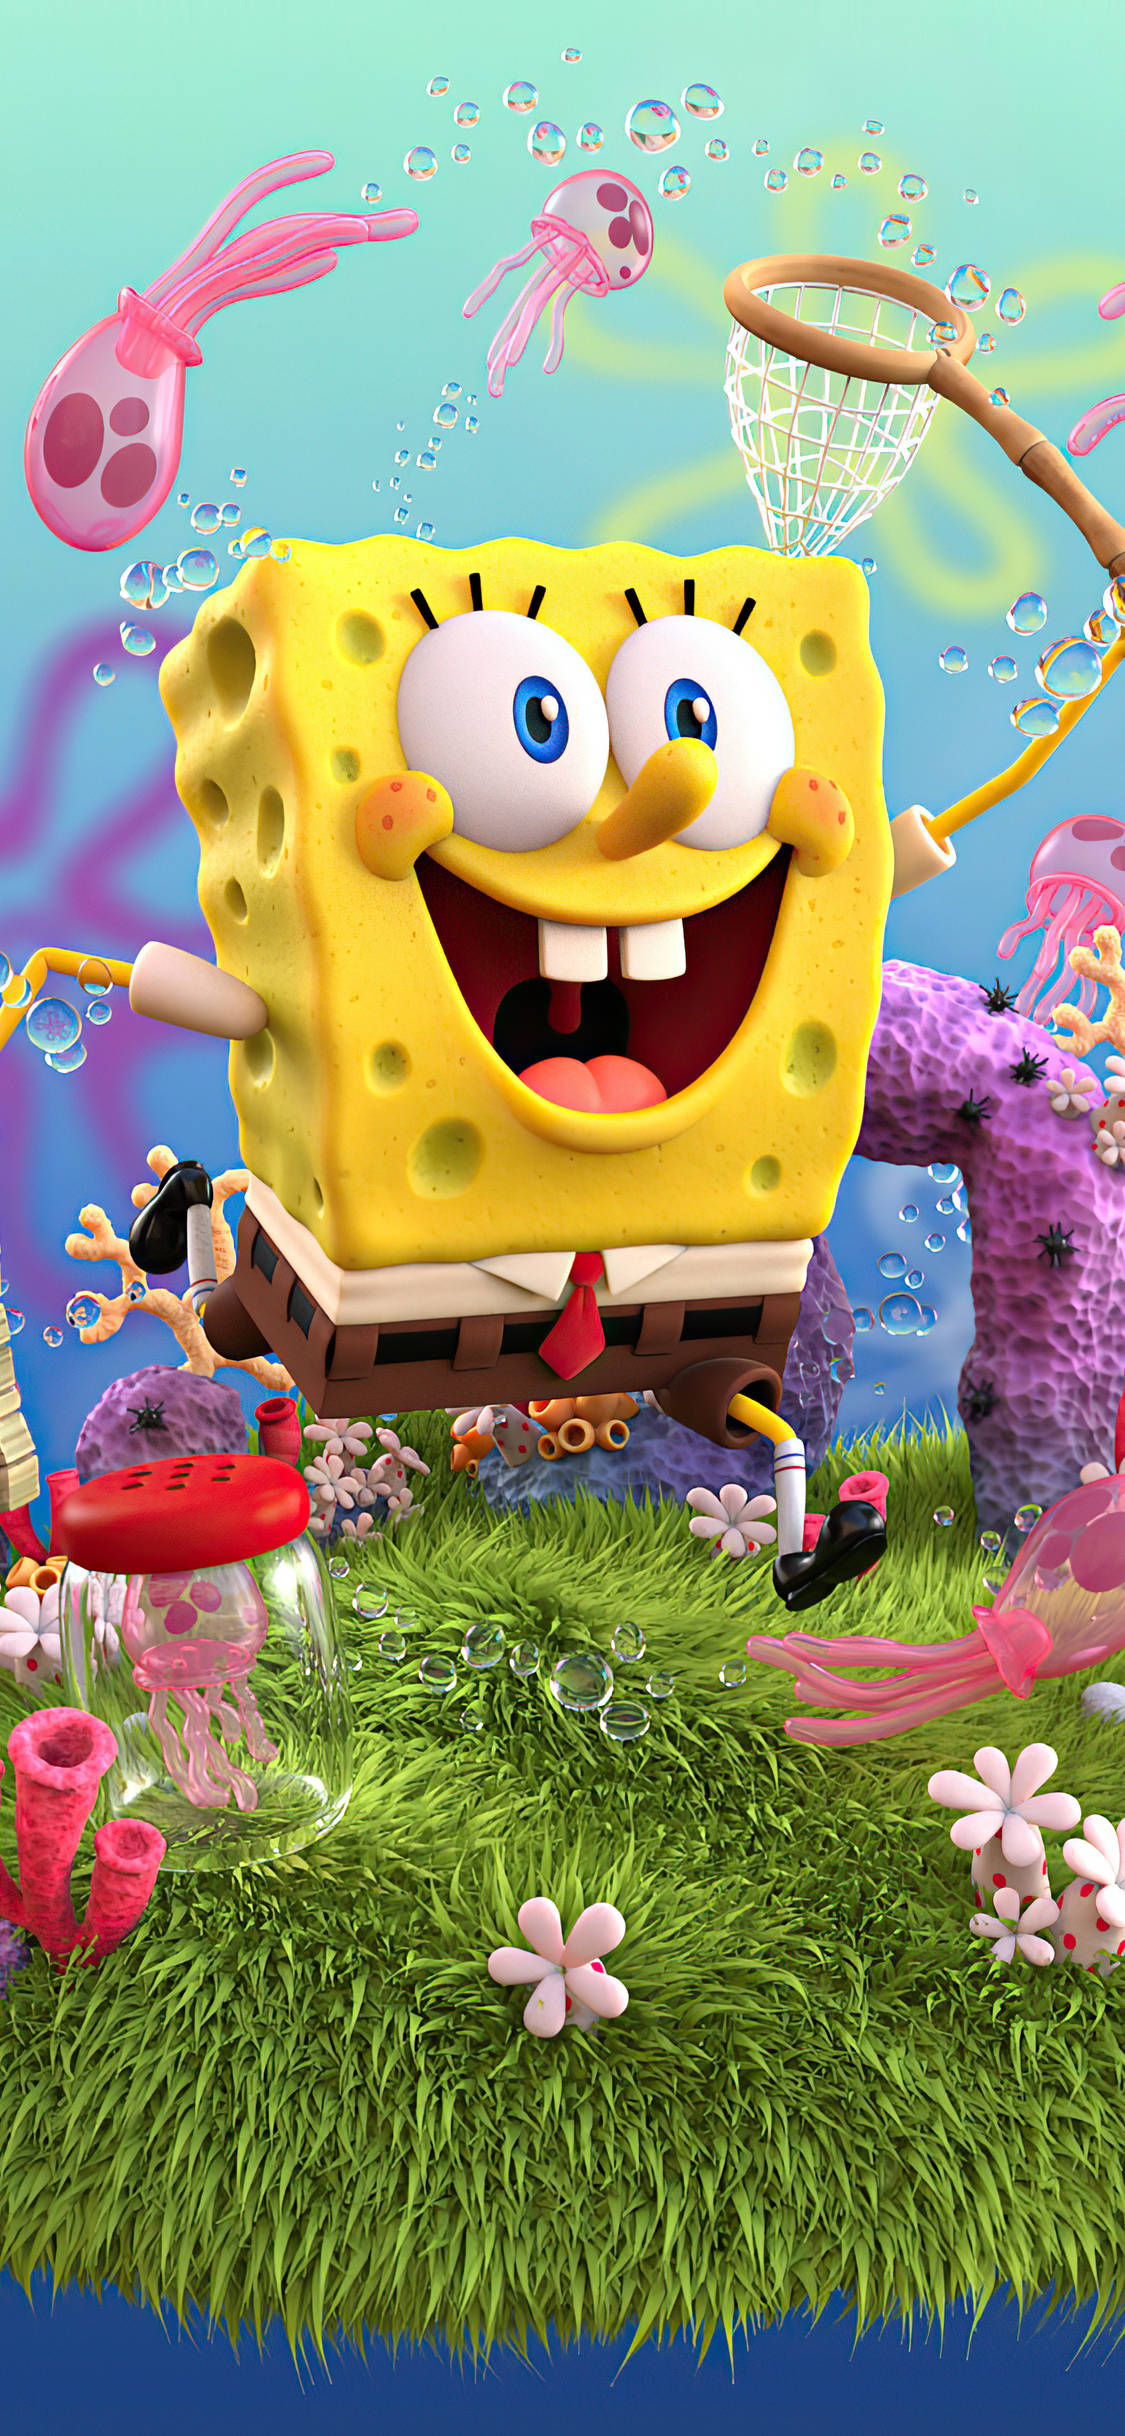 Download Spongebob 3d Iphone X Cartoon Wallpaper 